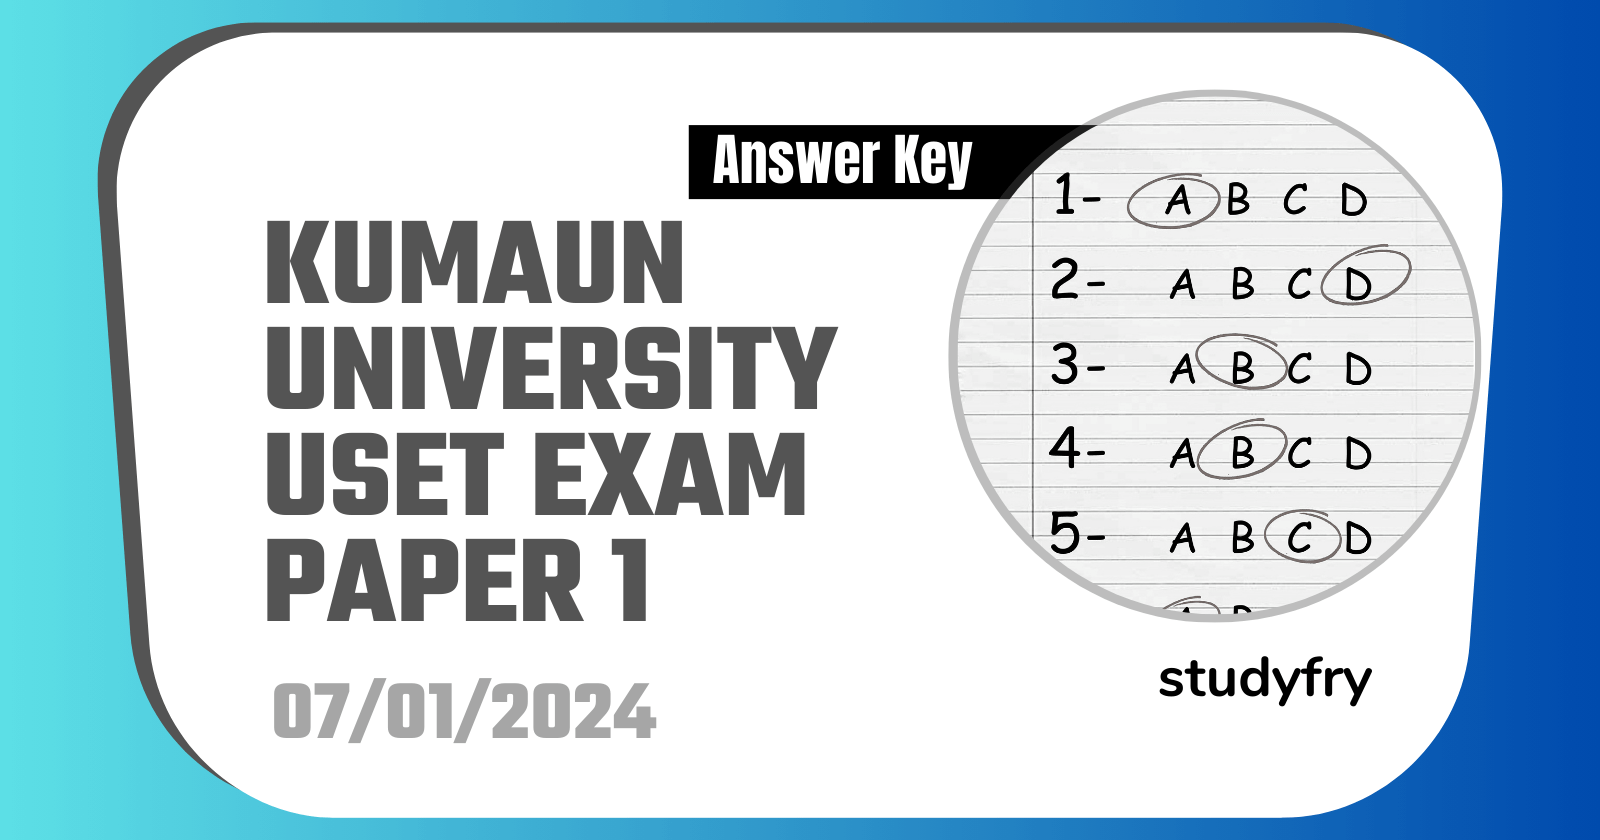 Kumaun University USET Exam Paper 1 - 7 January 2024 (Answer Key)